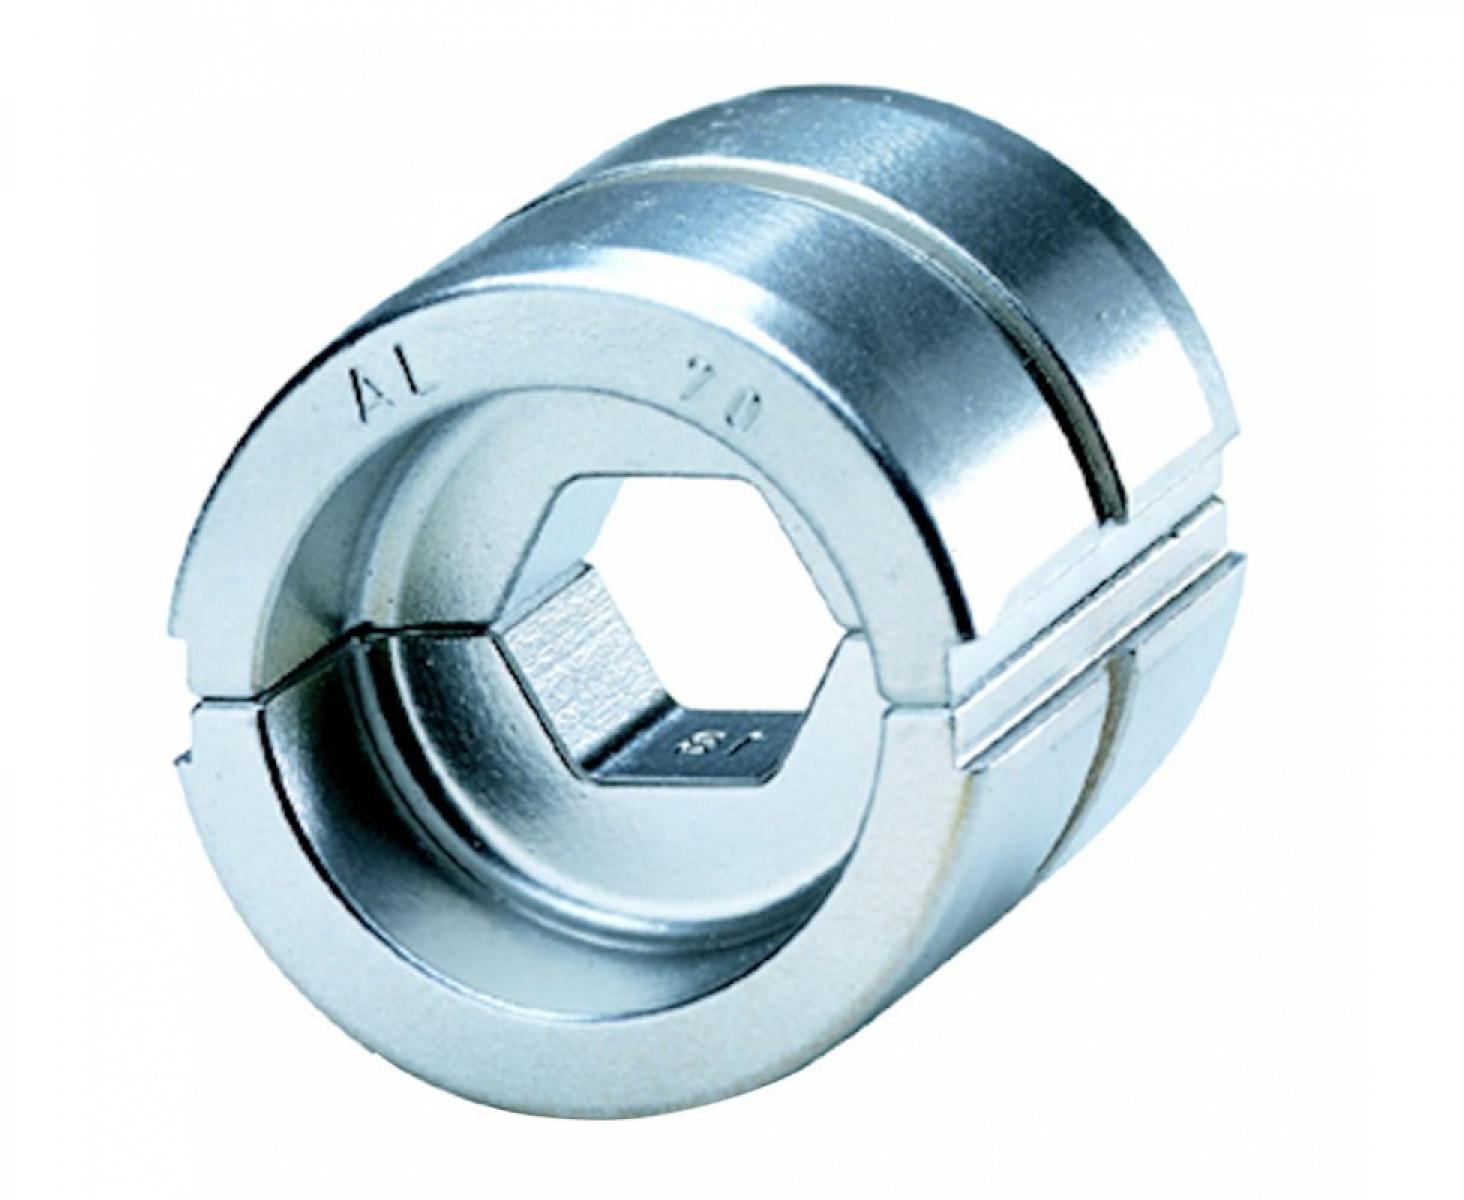 Пресс-матрица HA13 для алюминиевых наконечников и соединителей стандарта DIN 16-25 мм² Klauke KLKHA131625